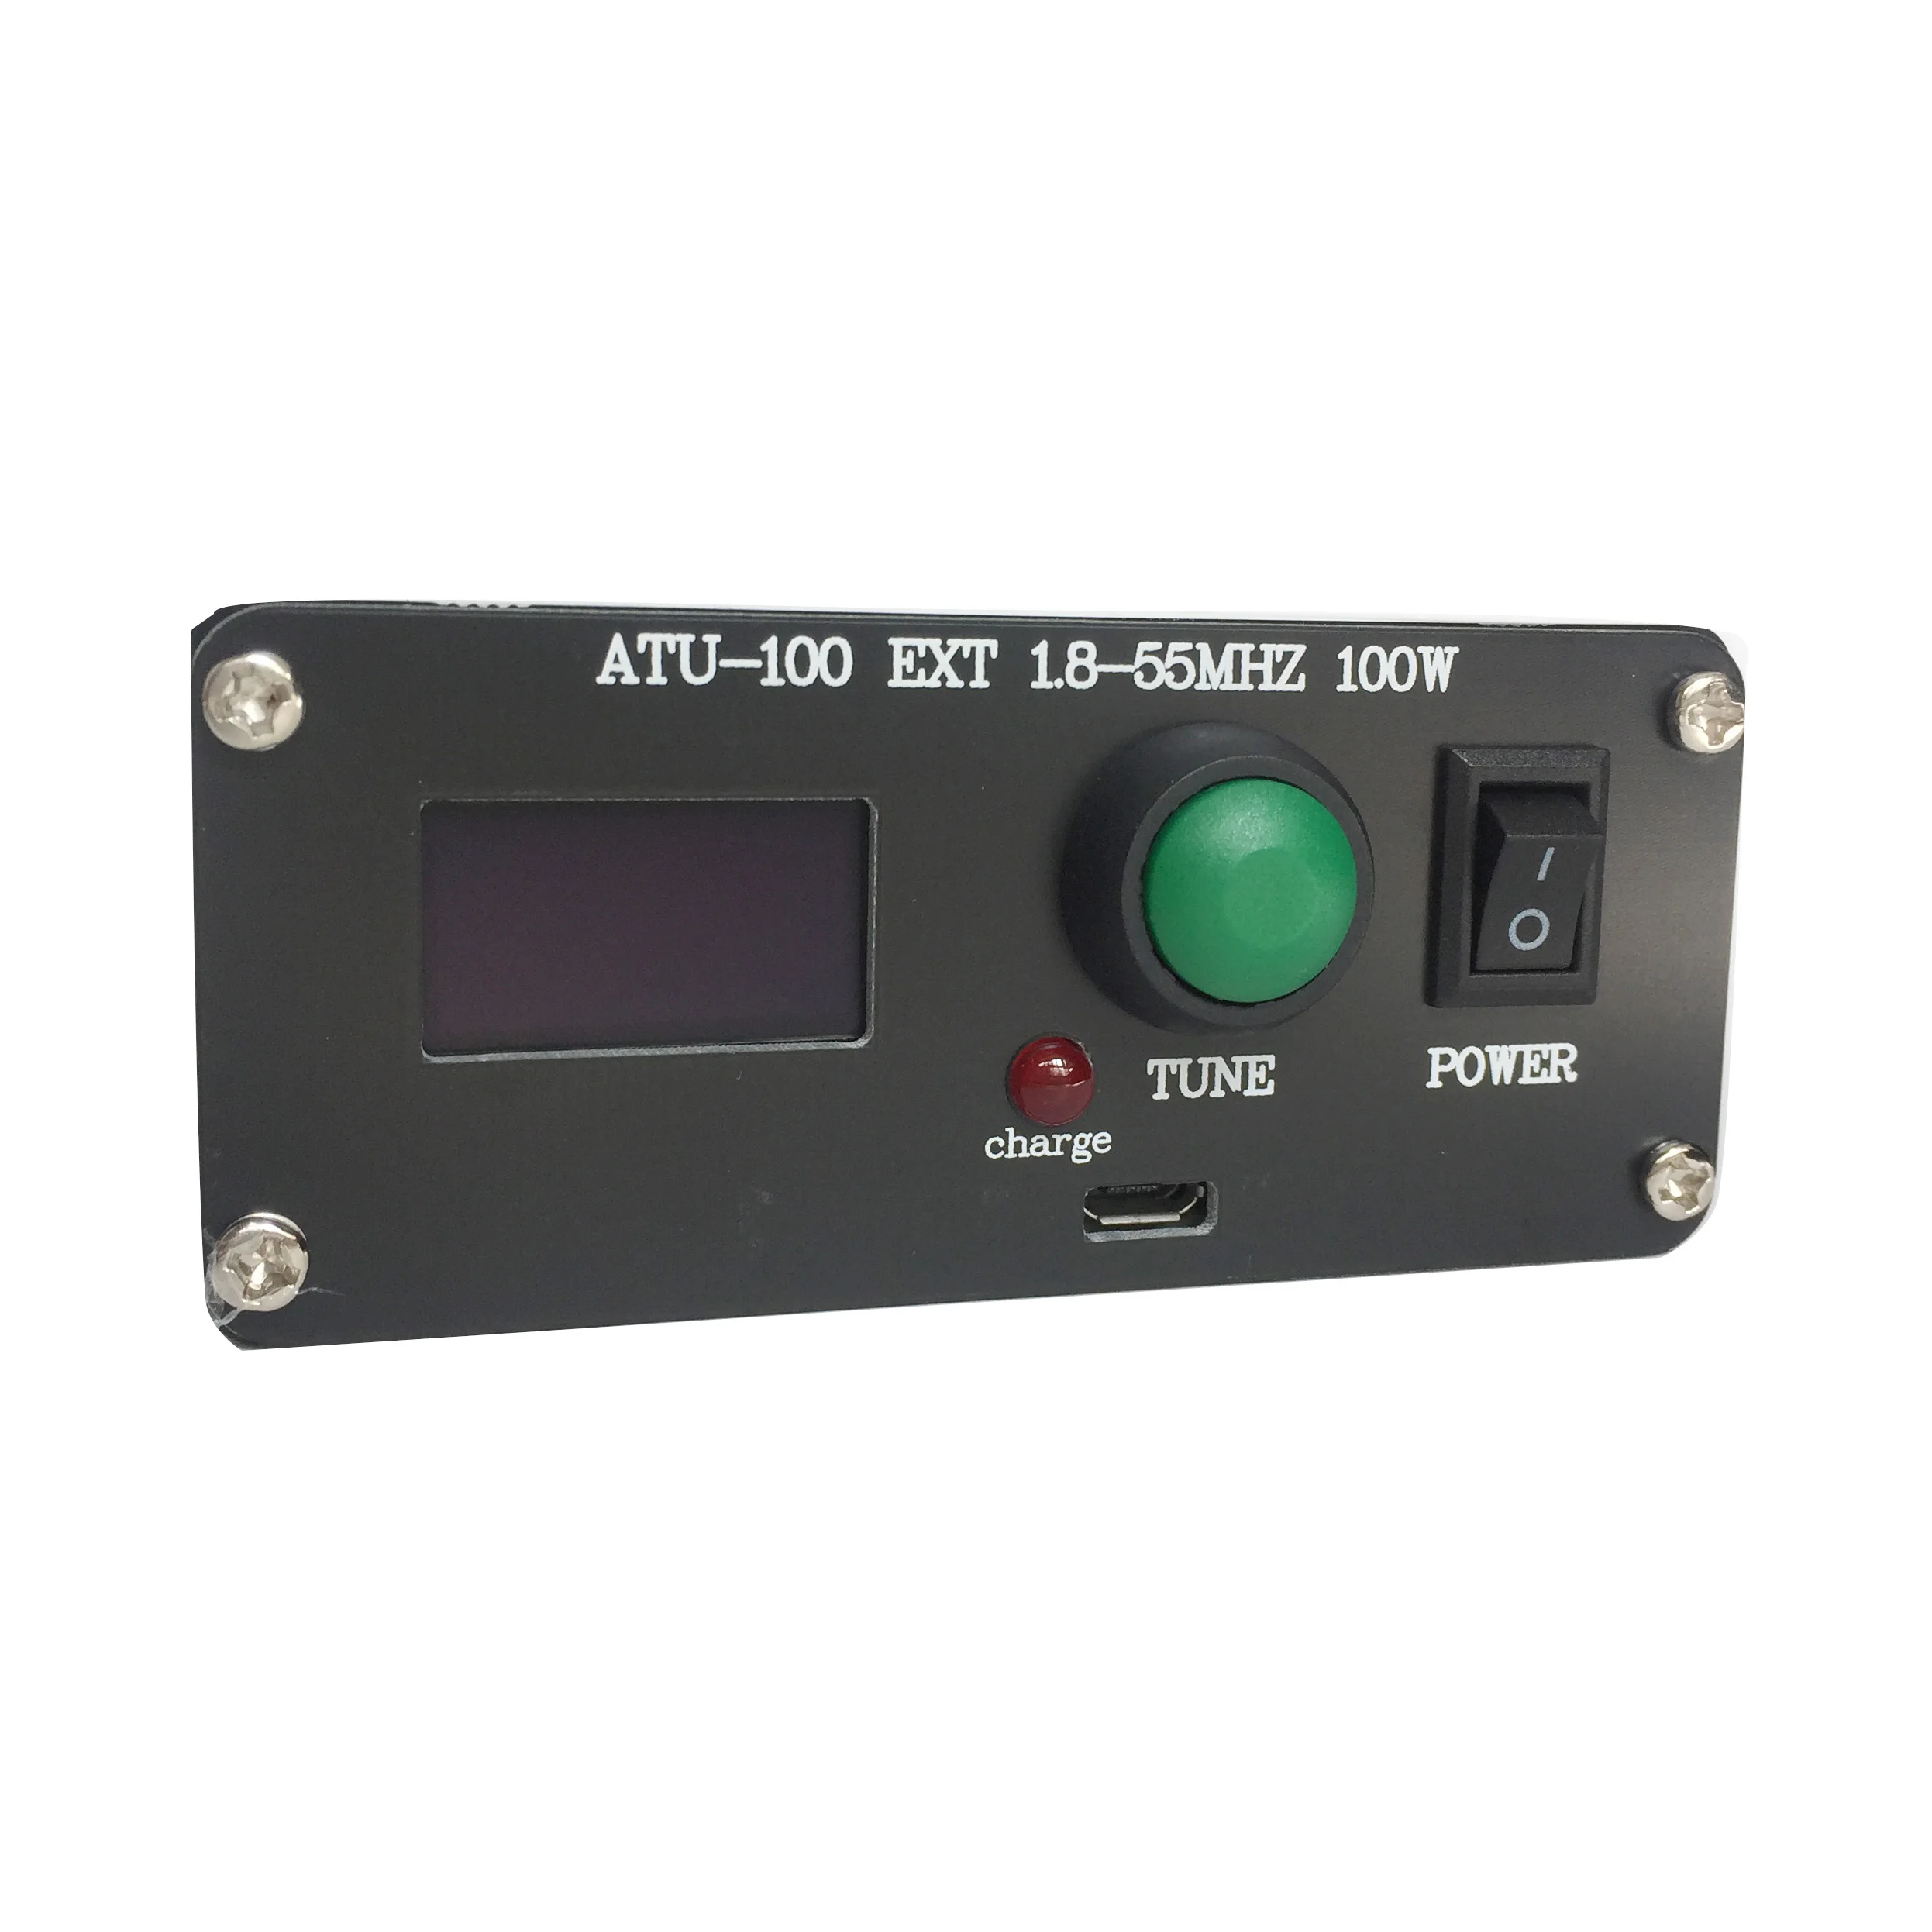 Готовый мини-автоматический антенный тюнер ATU-100 ATU-100 1,8-50 МГц от N7DDC 7x7 + Mini 0.96 OLED + Металлический корпус + батарея 1350 МА1